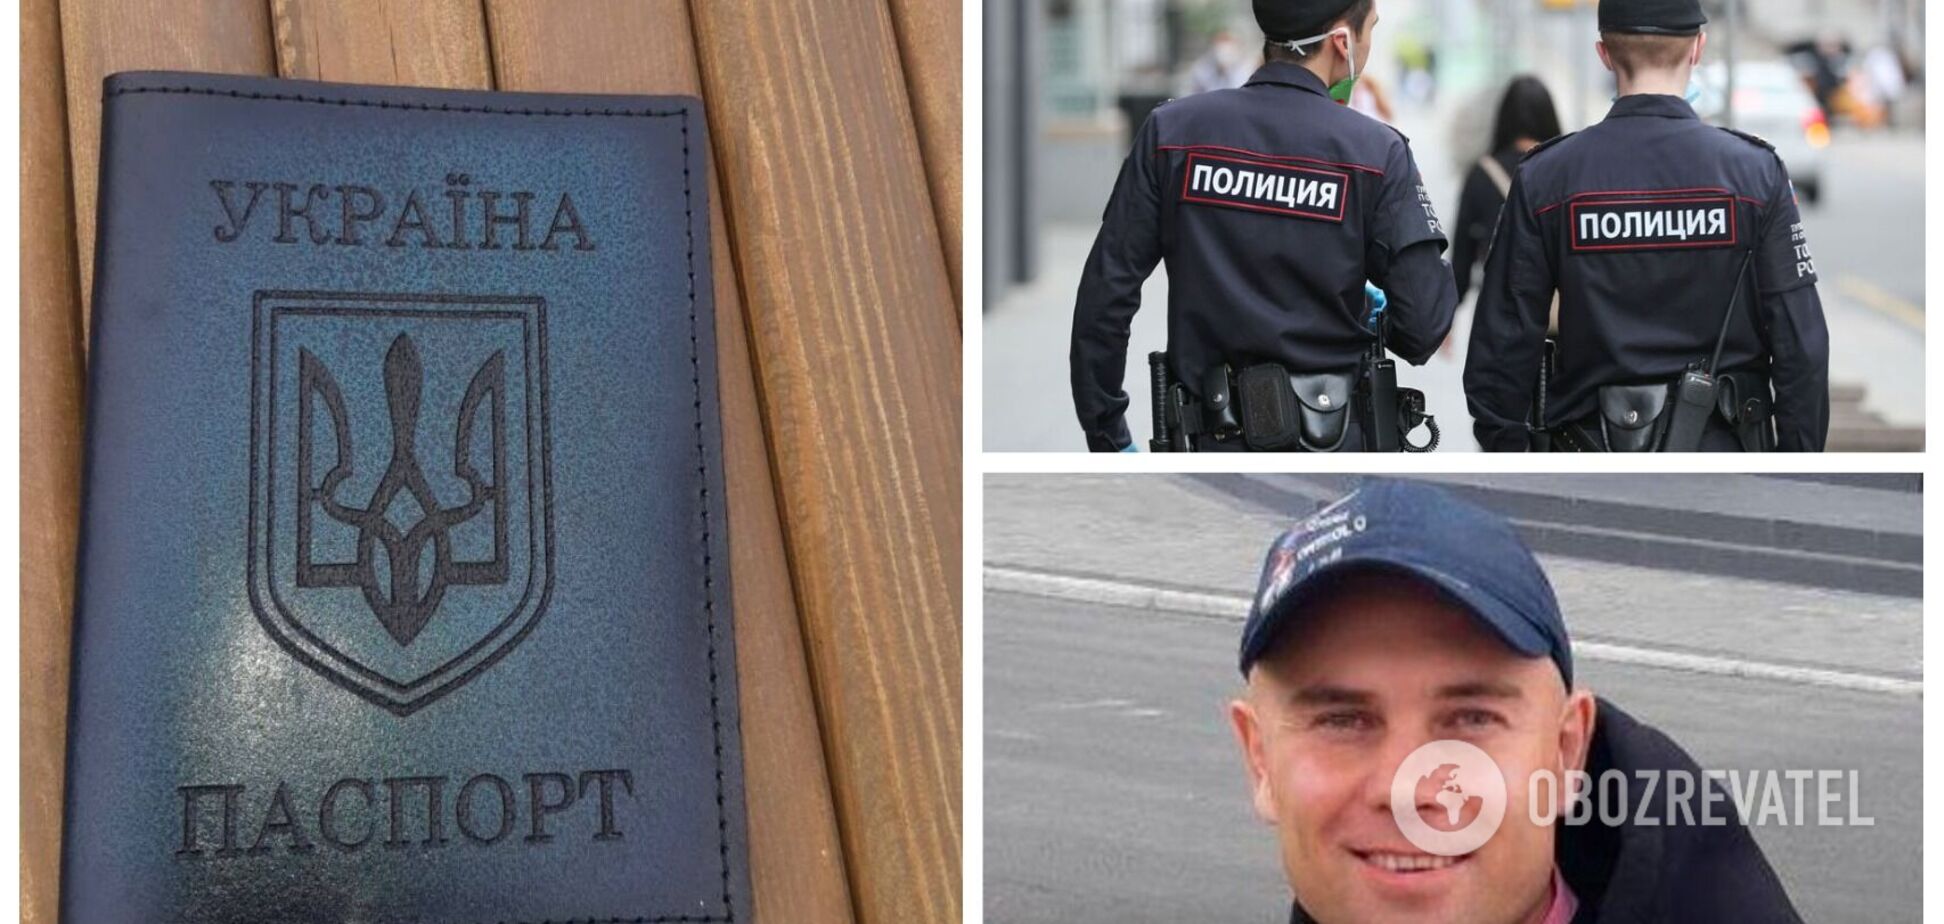 У РФ поліцейські побили інваліда через обкладинку паспорта з гербом України: звинуватили у дискредитації армії. Фото